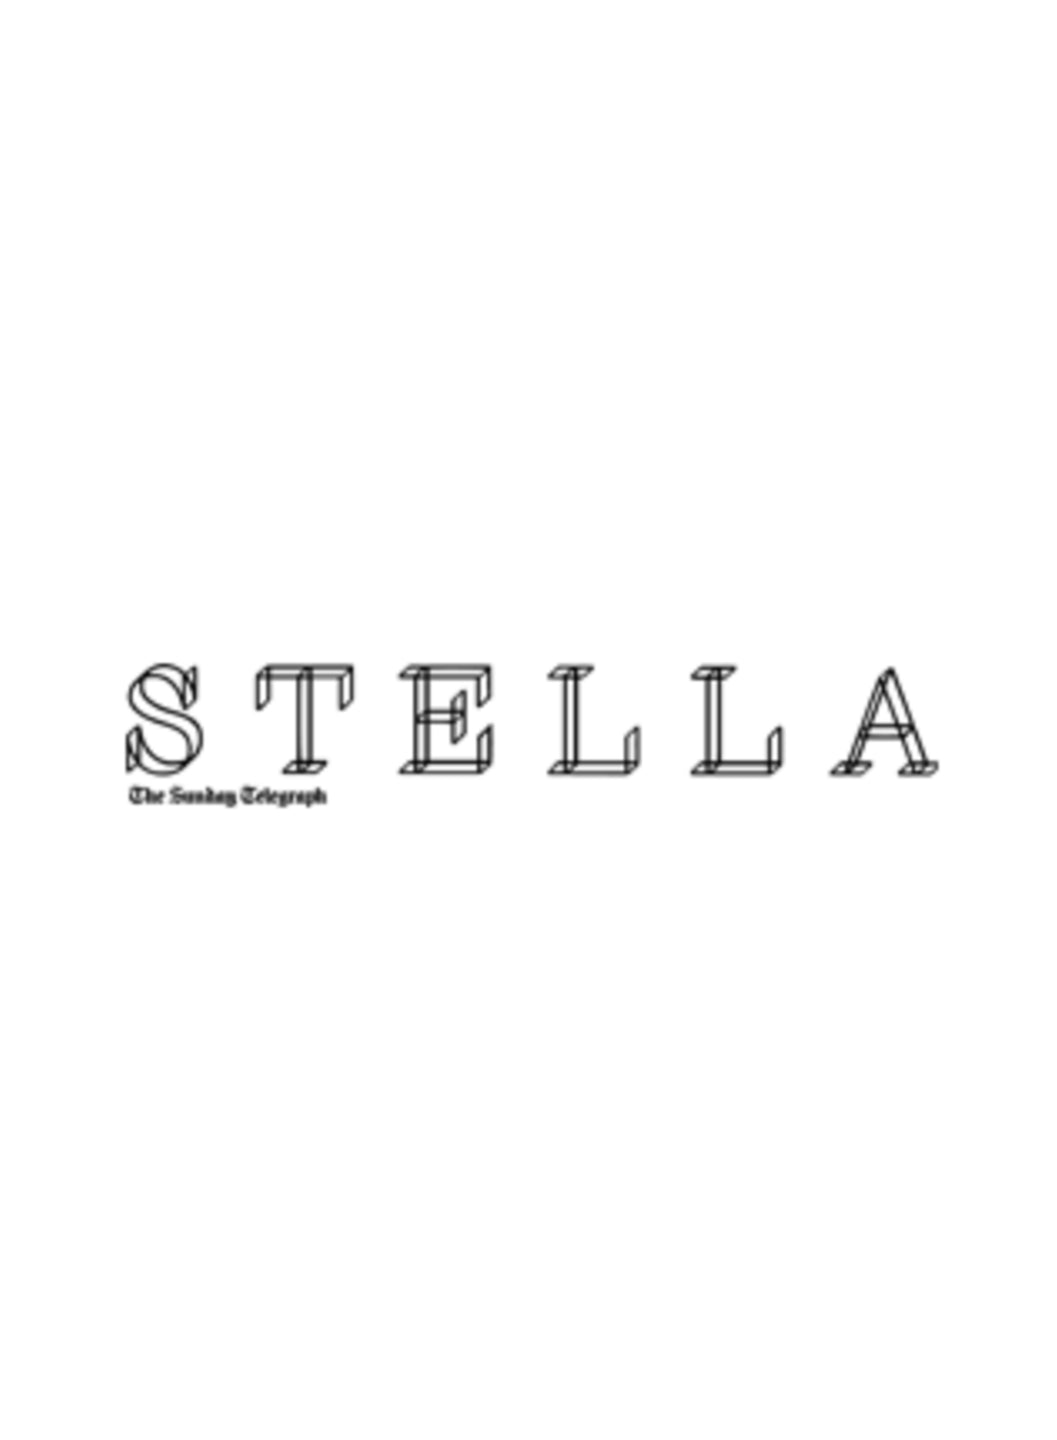 Stella - January 19